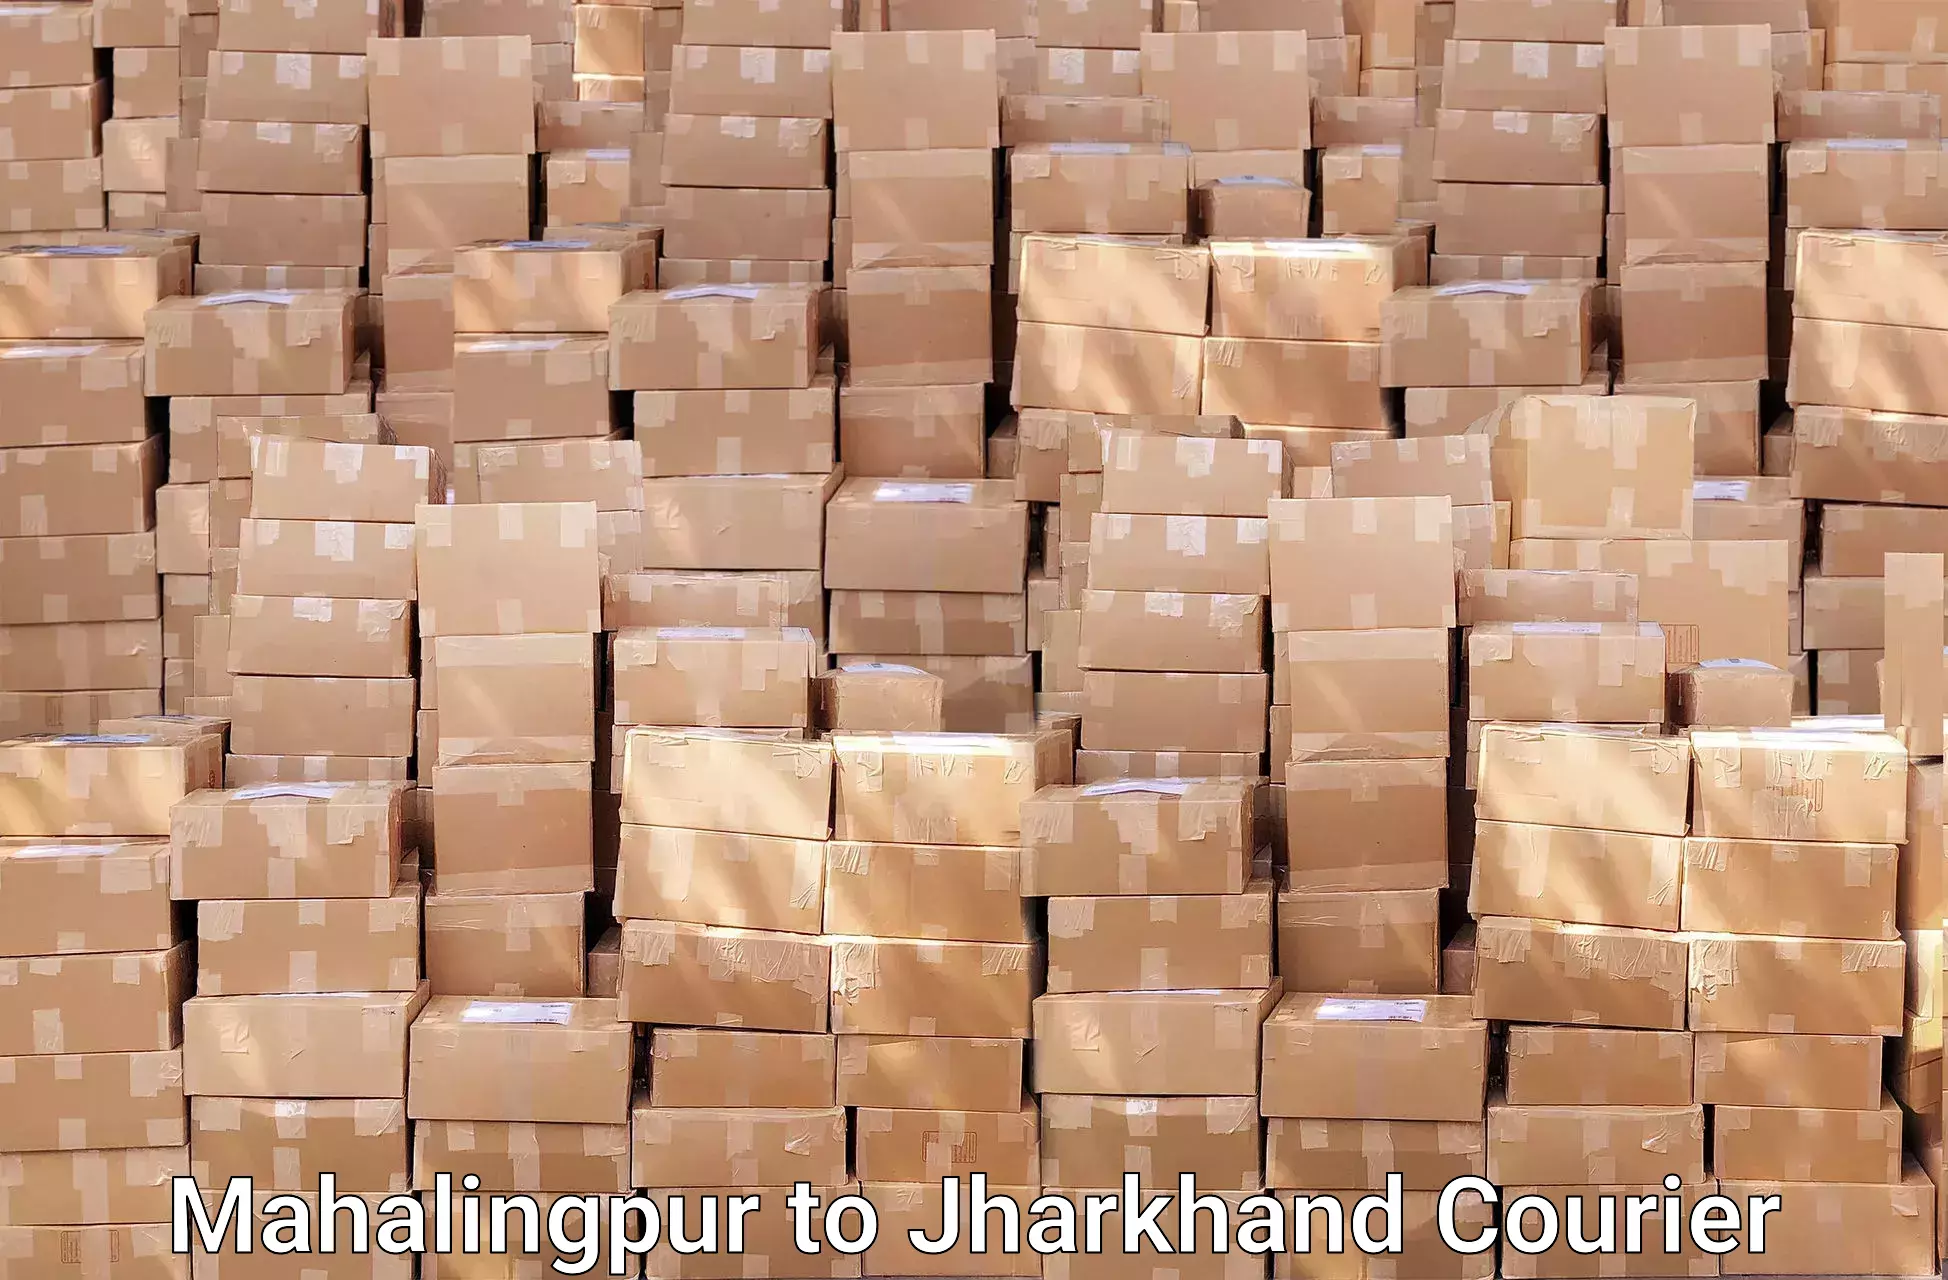 Efficient packing and moving Mahalingpur to Chaibasa